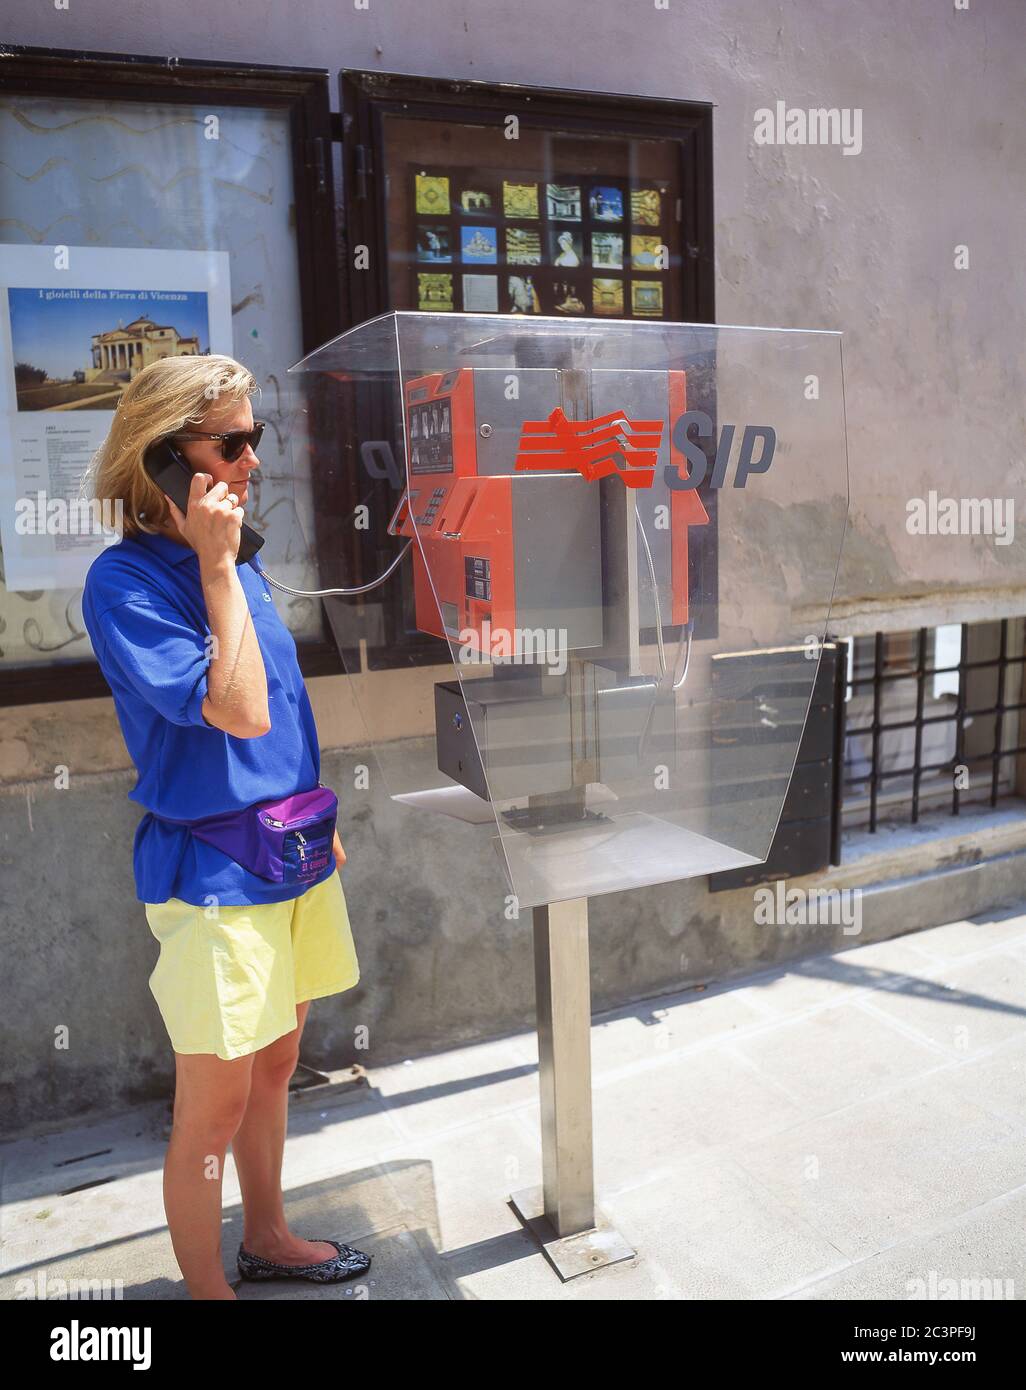 Jeune touriste utilisant un téléphone payant, Venise (Venezia), région de Vénétie, Italie Banque D'Images